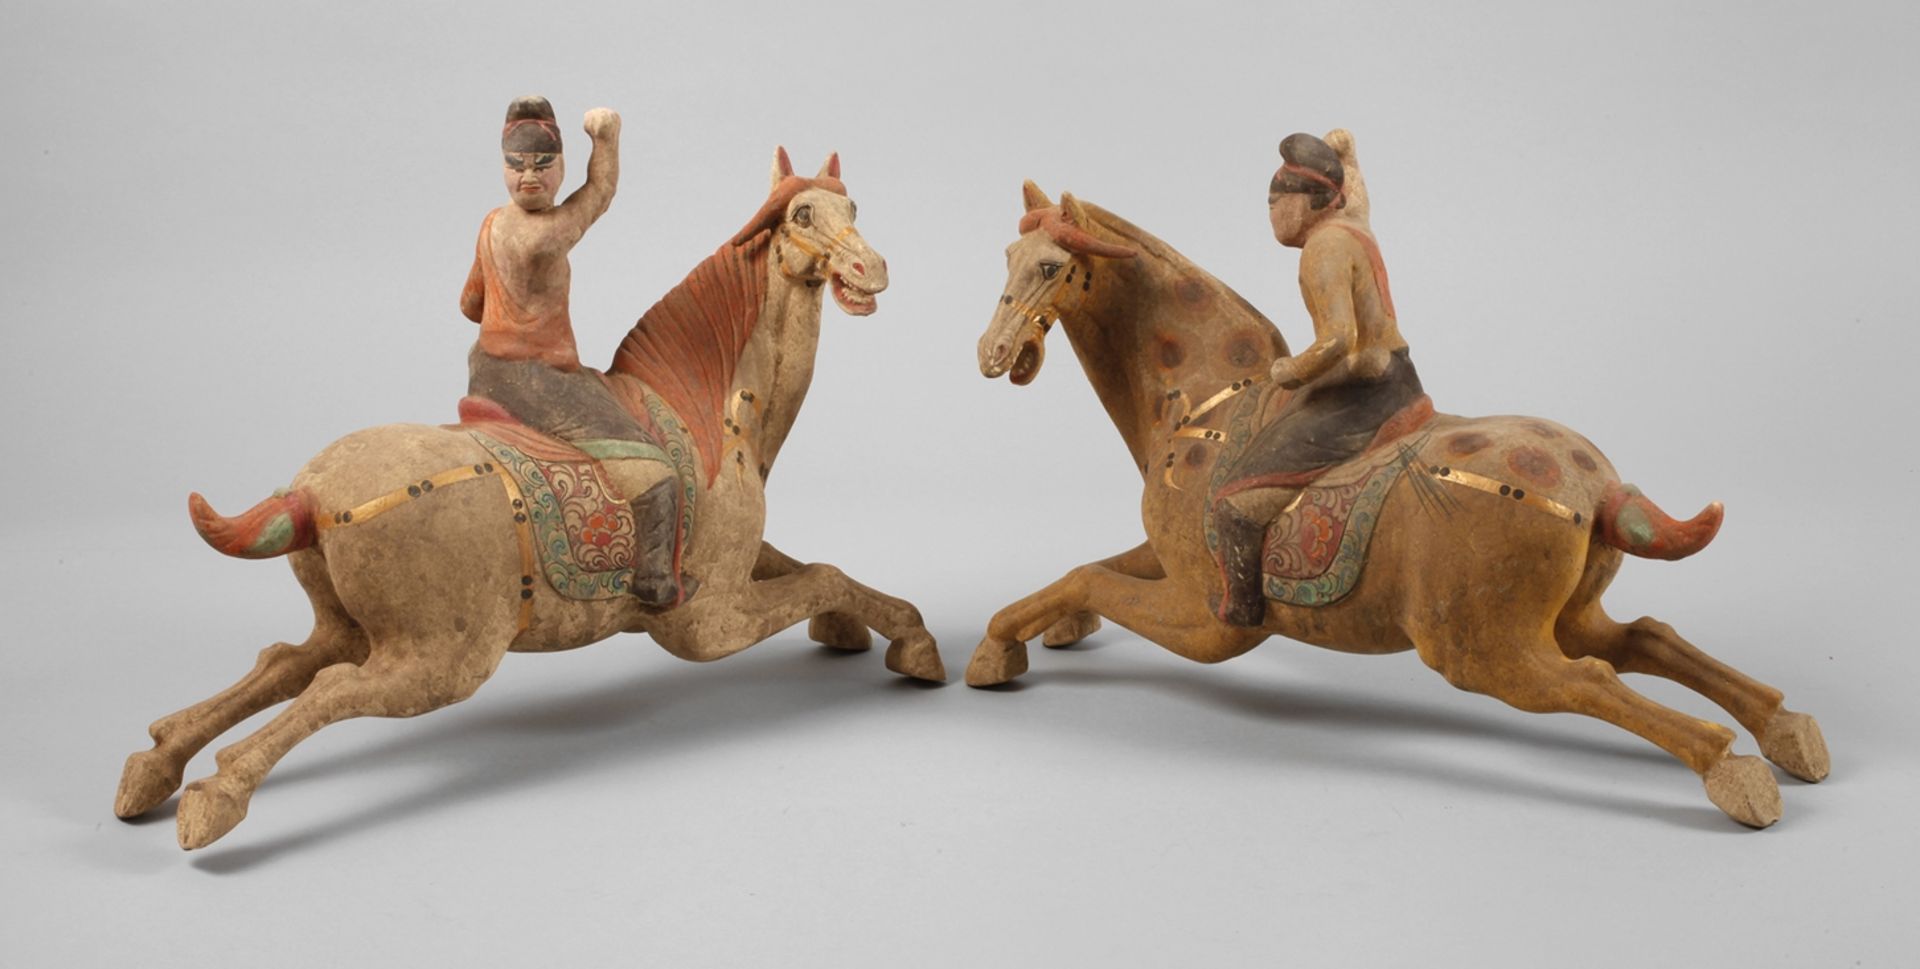 Pair of equestrian sculptures